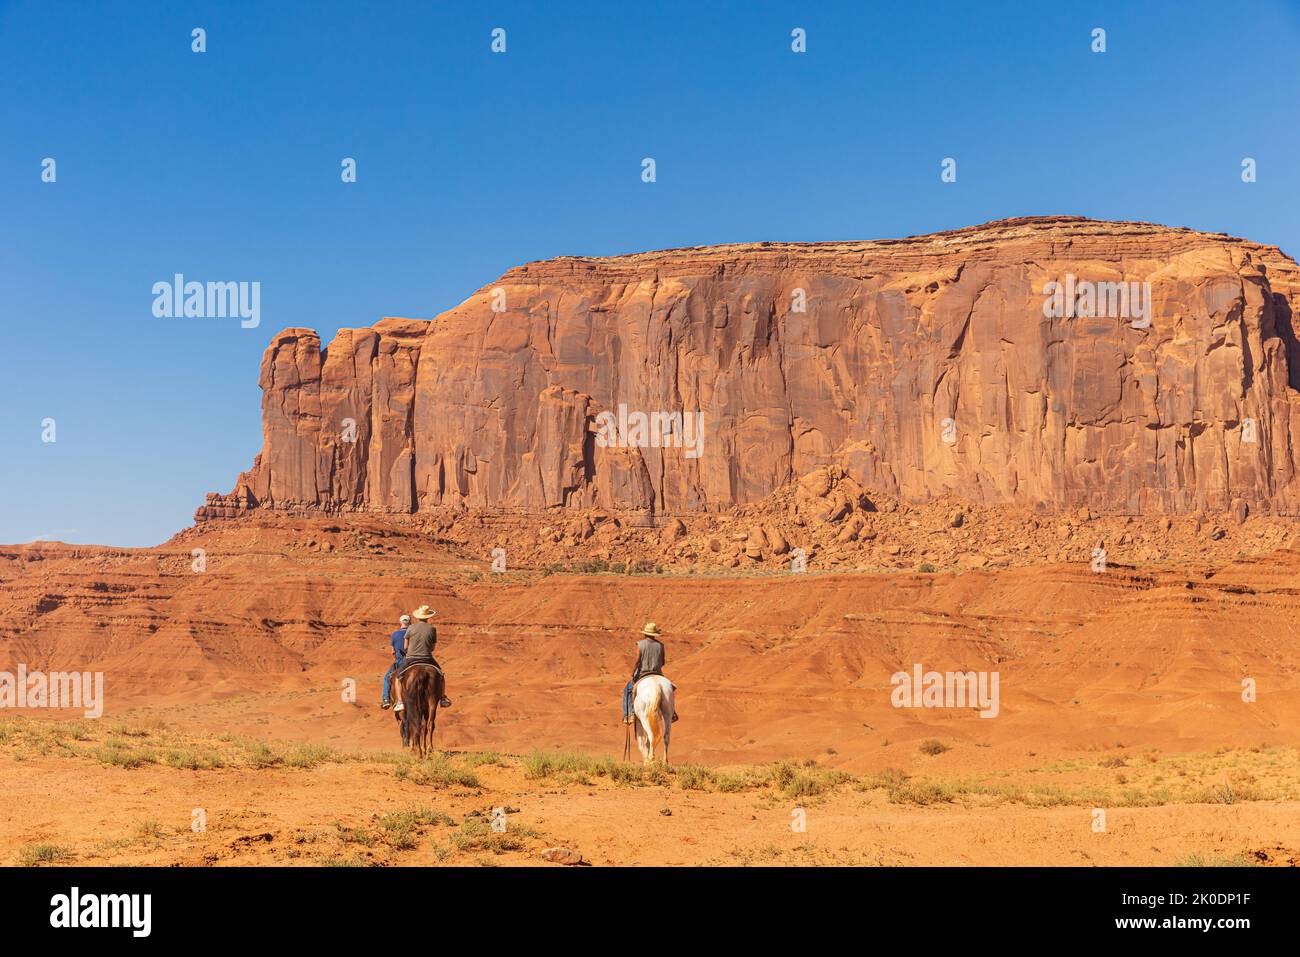 MONUMENT VALLEY, UTAH - 5 DE SEPTIEMBRE: Los caballos recorren Monument Valley el 5 de septiembre de 2022 en el Parque Tribal Navajo. Foto de stock